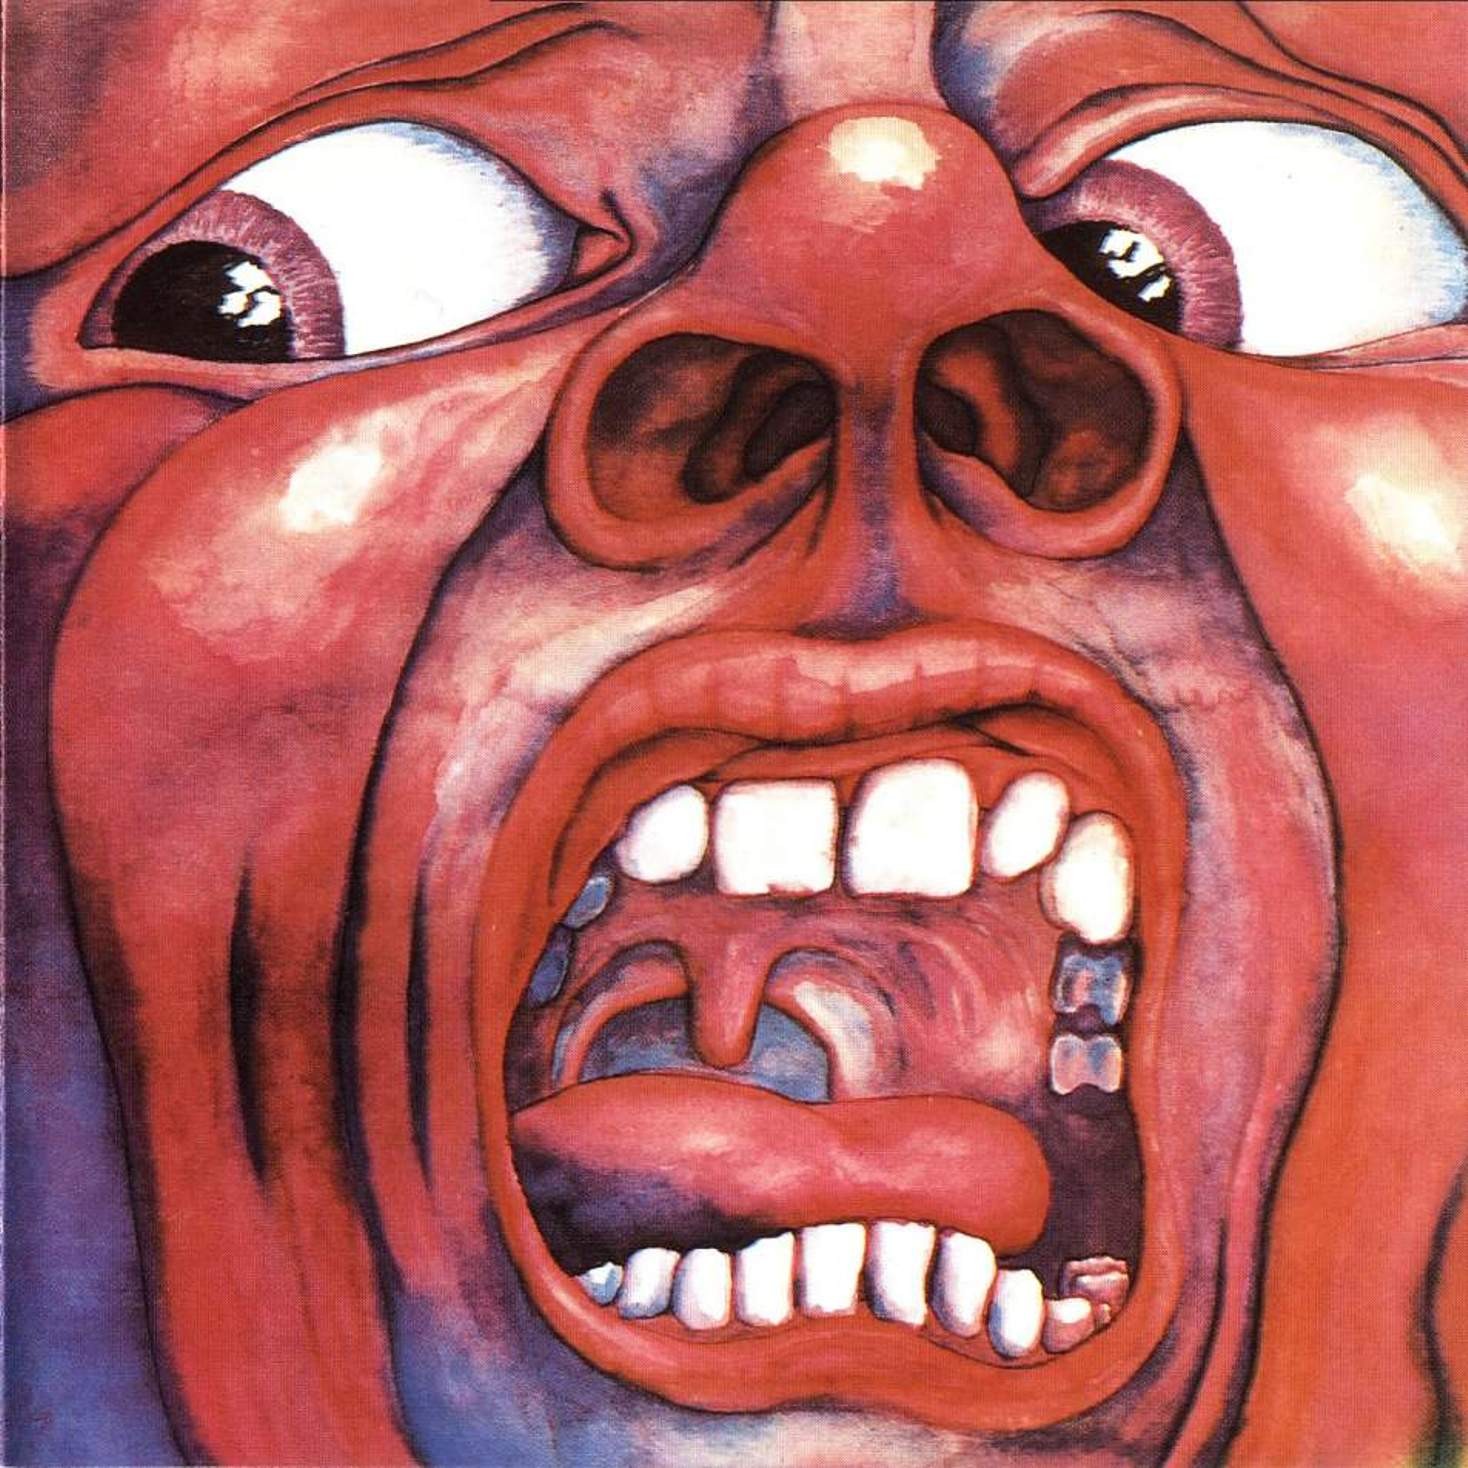 ¿Qué estáis escuchando ahora? - Página 4 King_Crimson_-_In_The_Court_Of_The_Crimson_King_-_Front